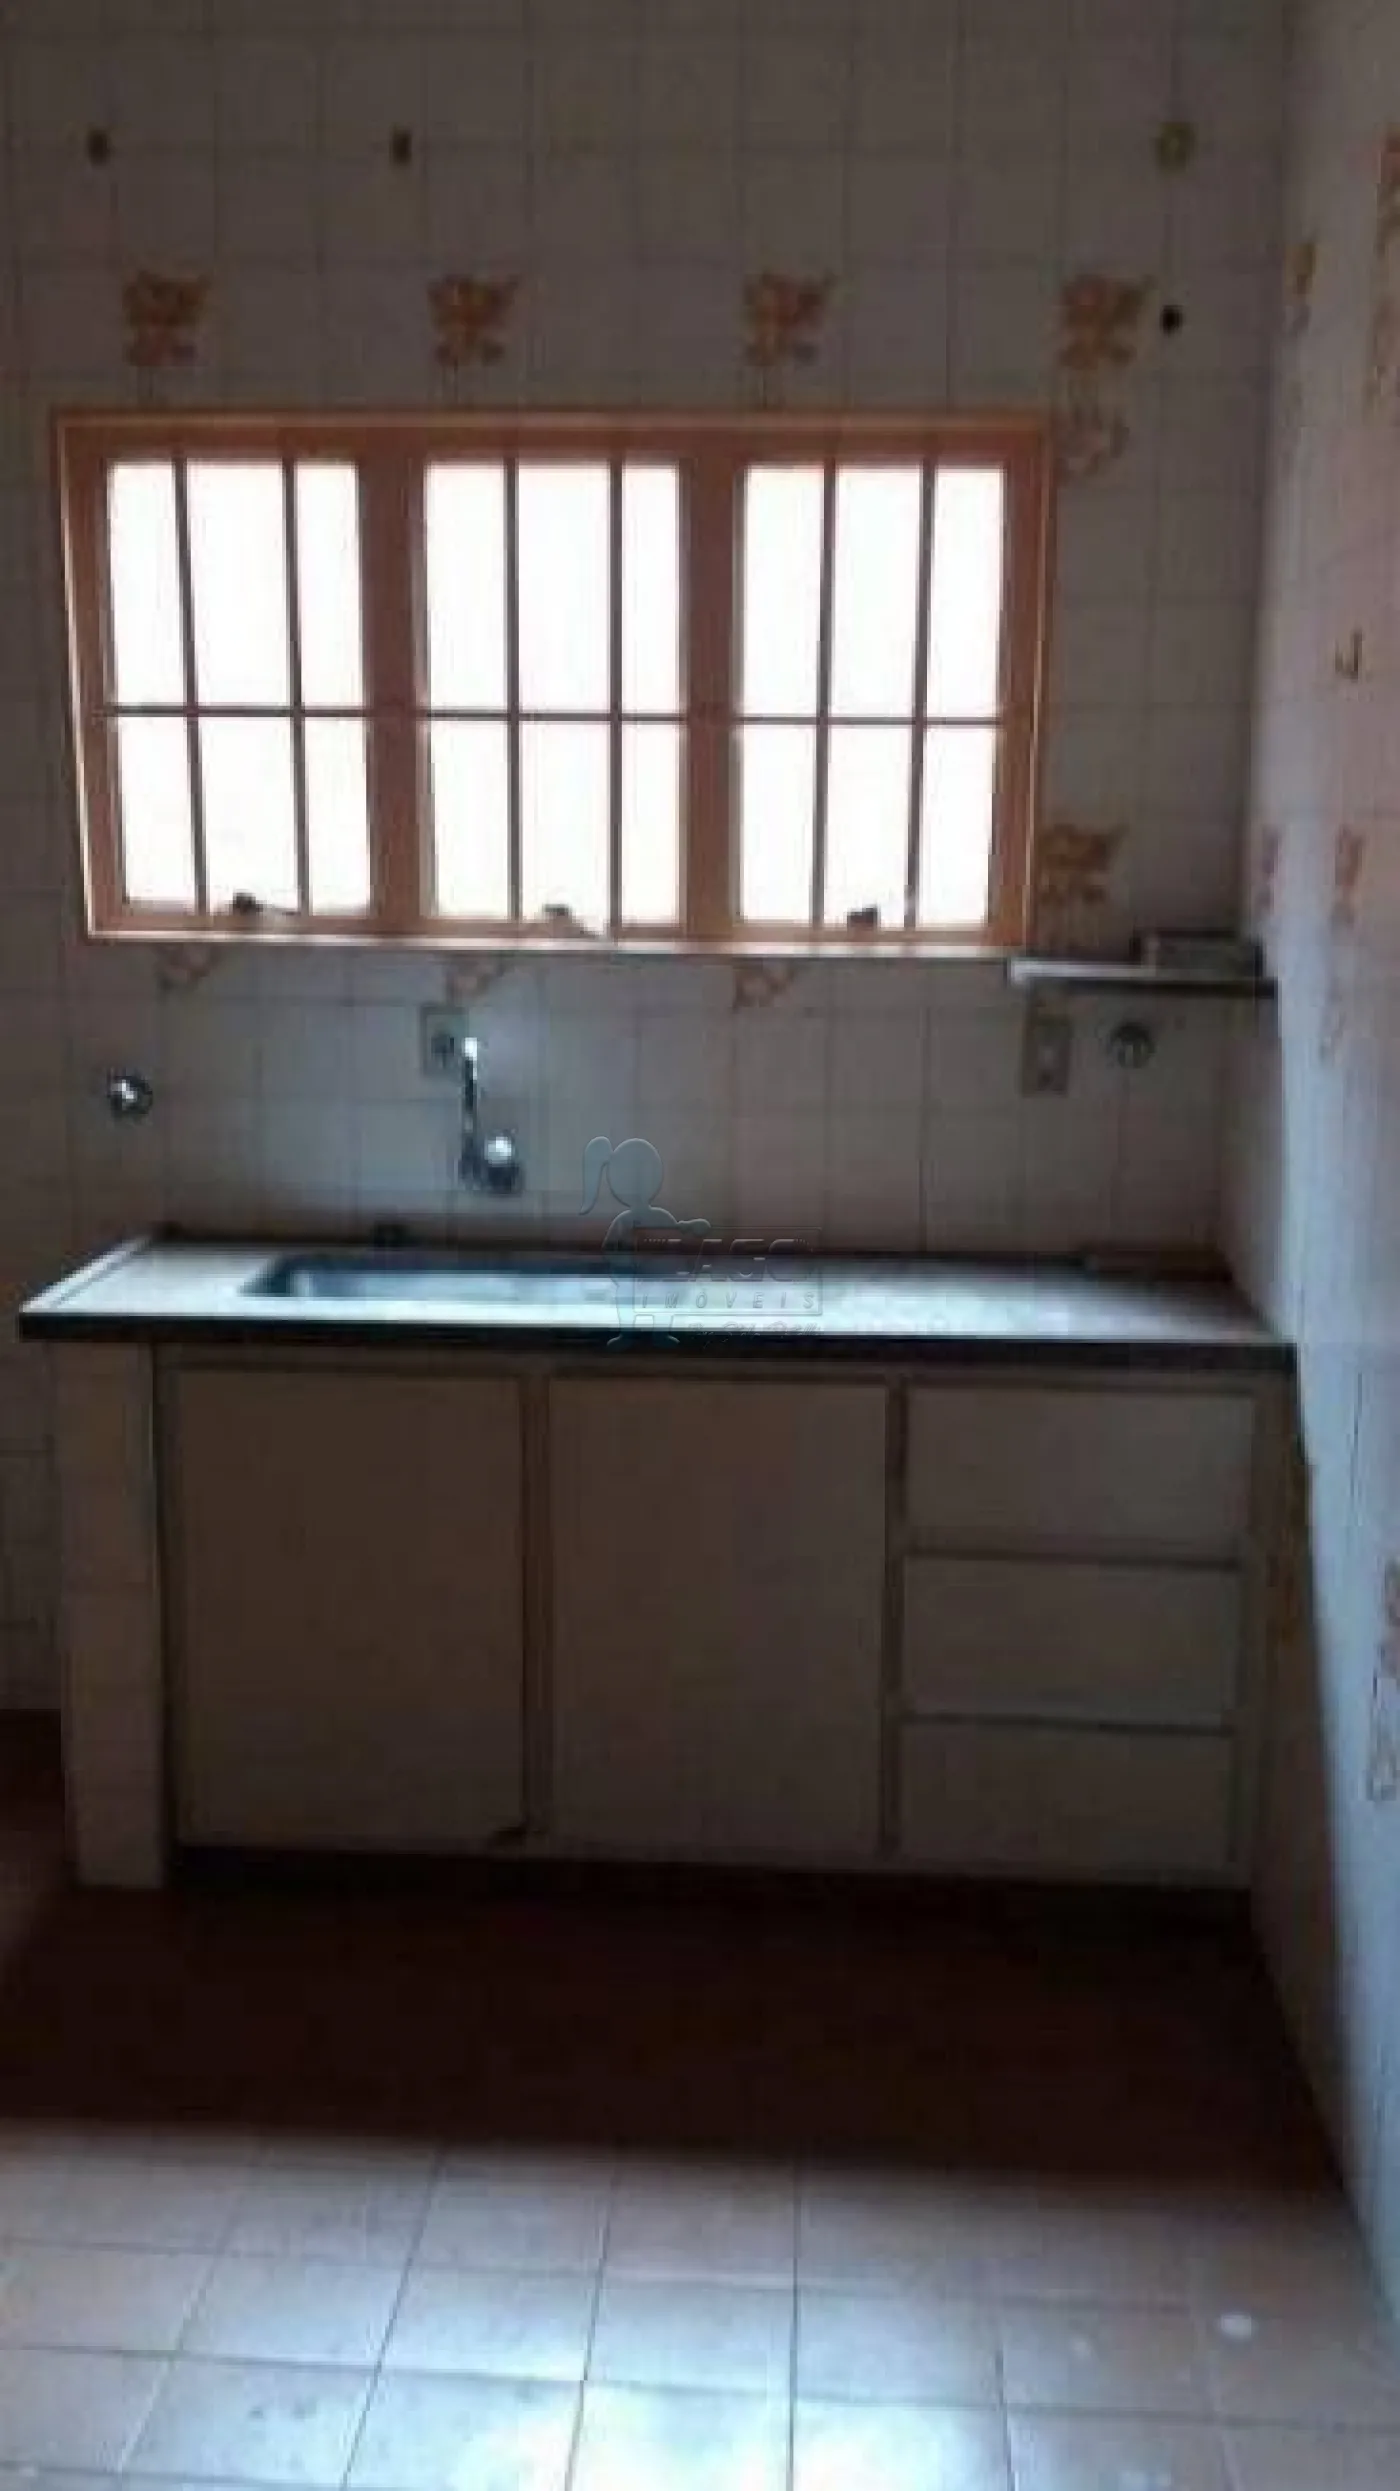 Comprar Apartamento / Padrão em Ribeirão Preto R$ 345.000,00 - Foto 9